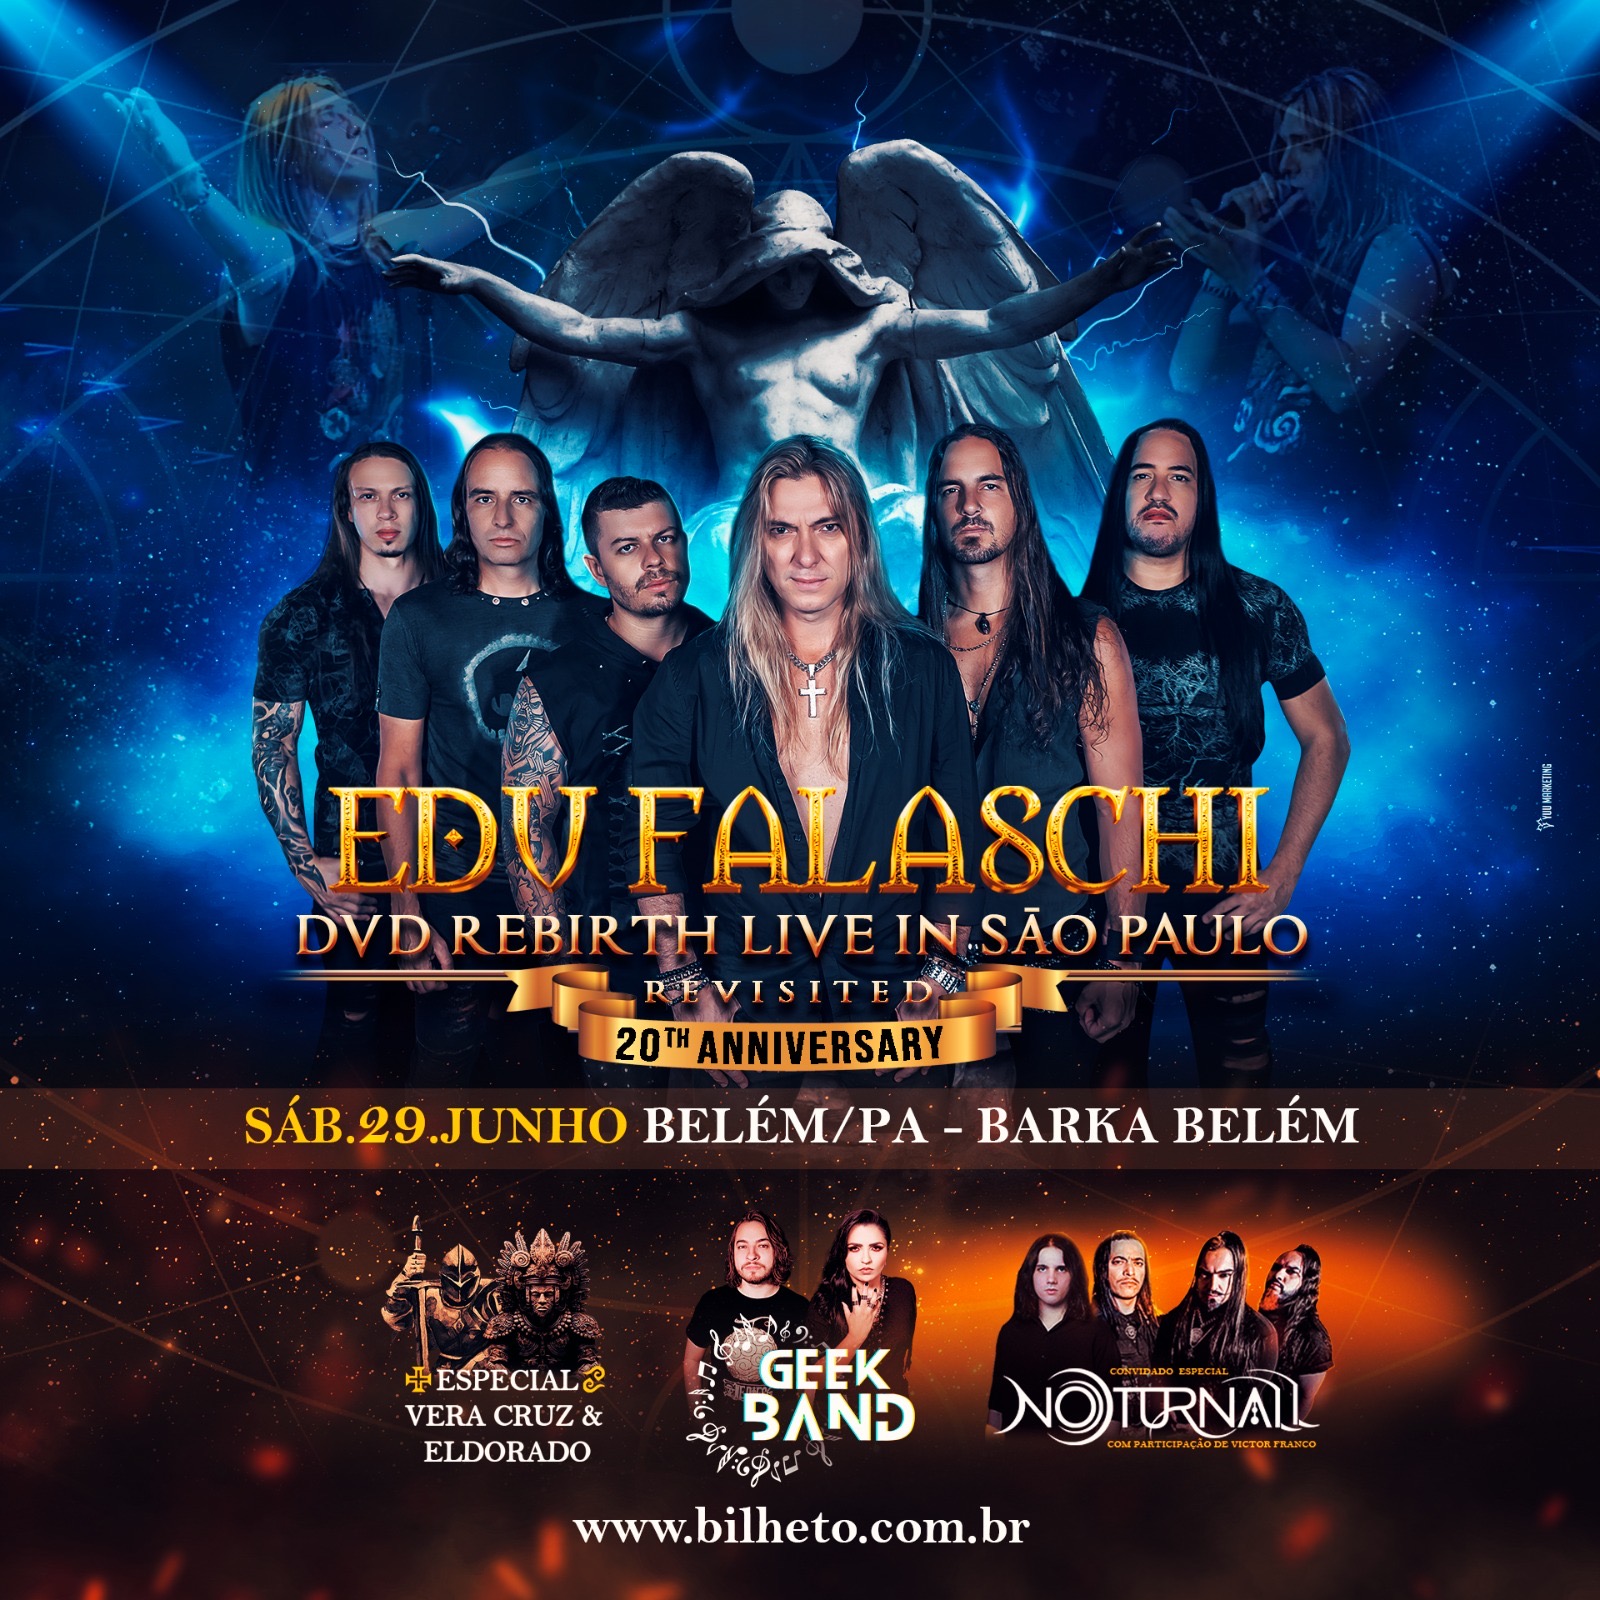 Edu Falaschi - DVD Rebirth Live In São Paulo